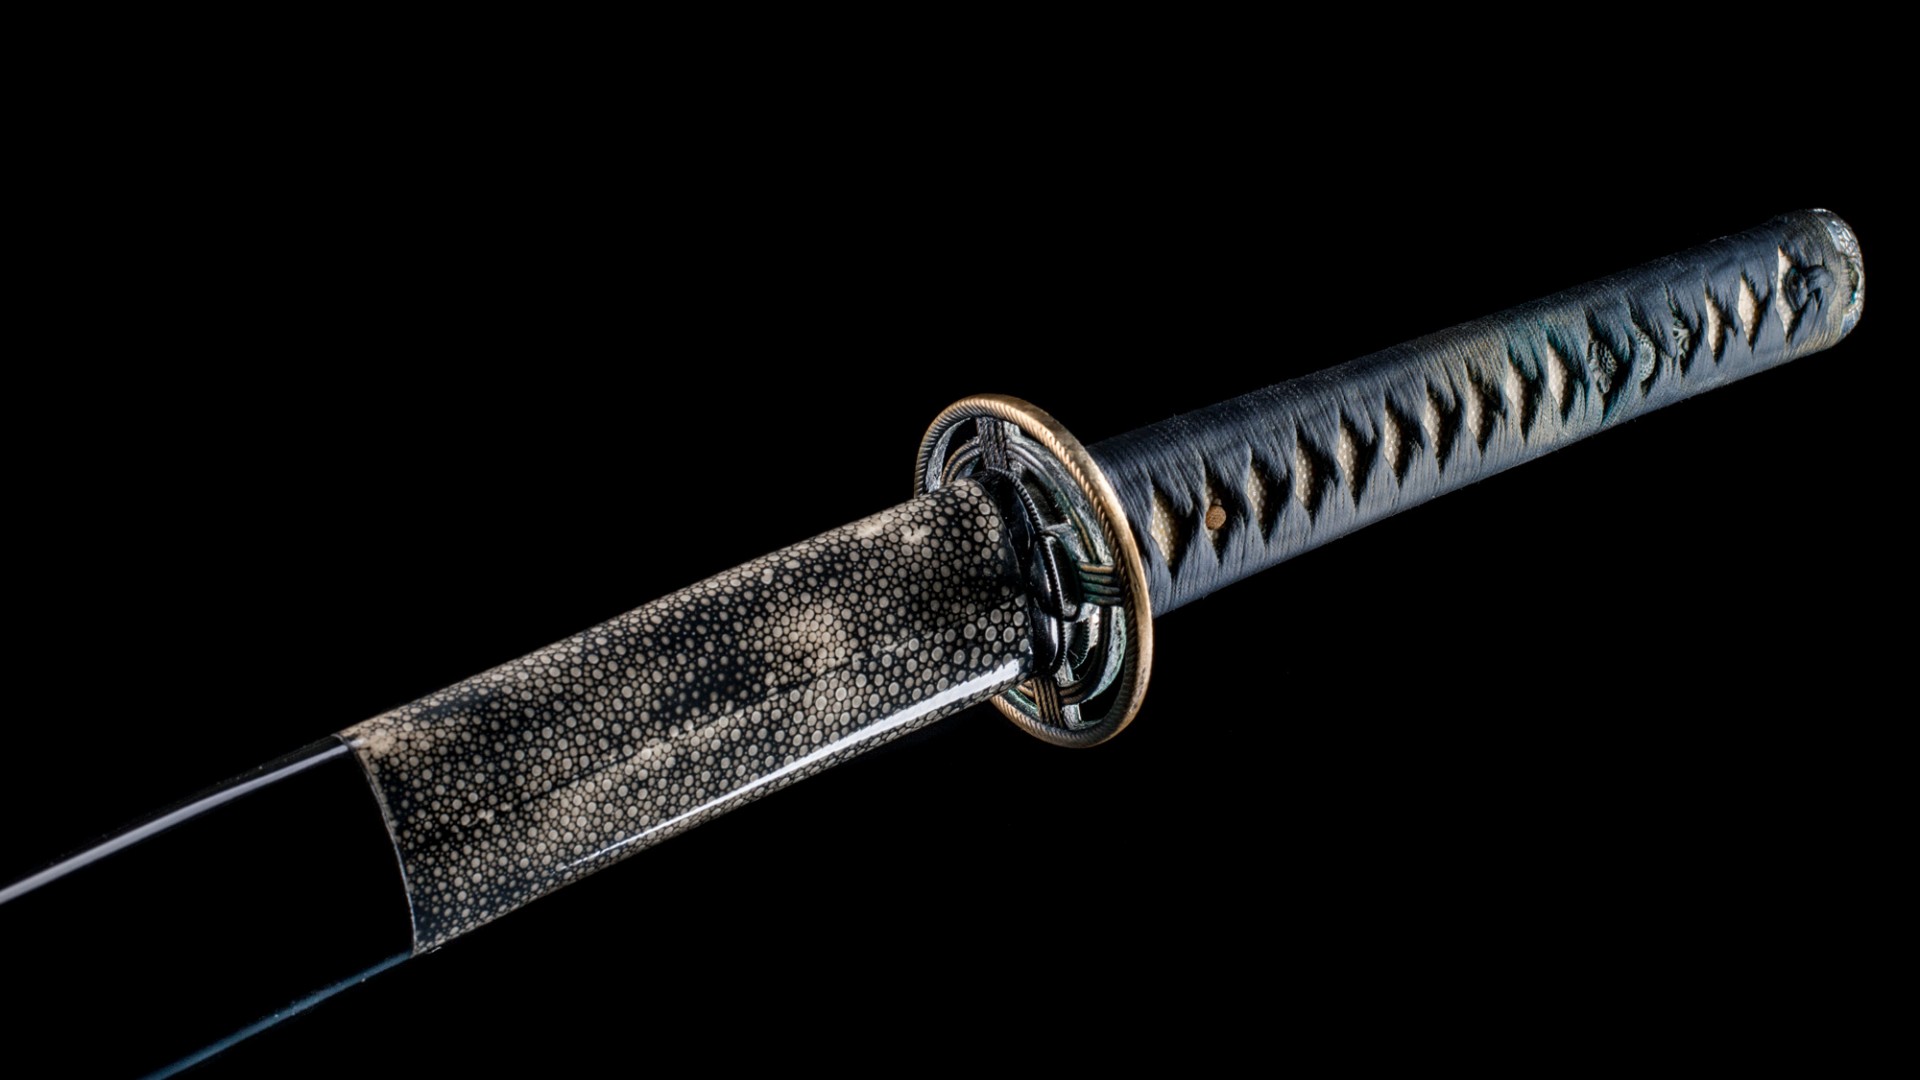 Japanese Swords Ninja Katana On Black Background